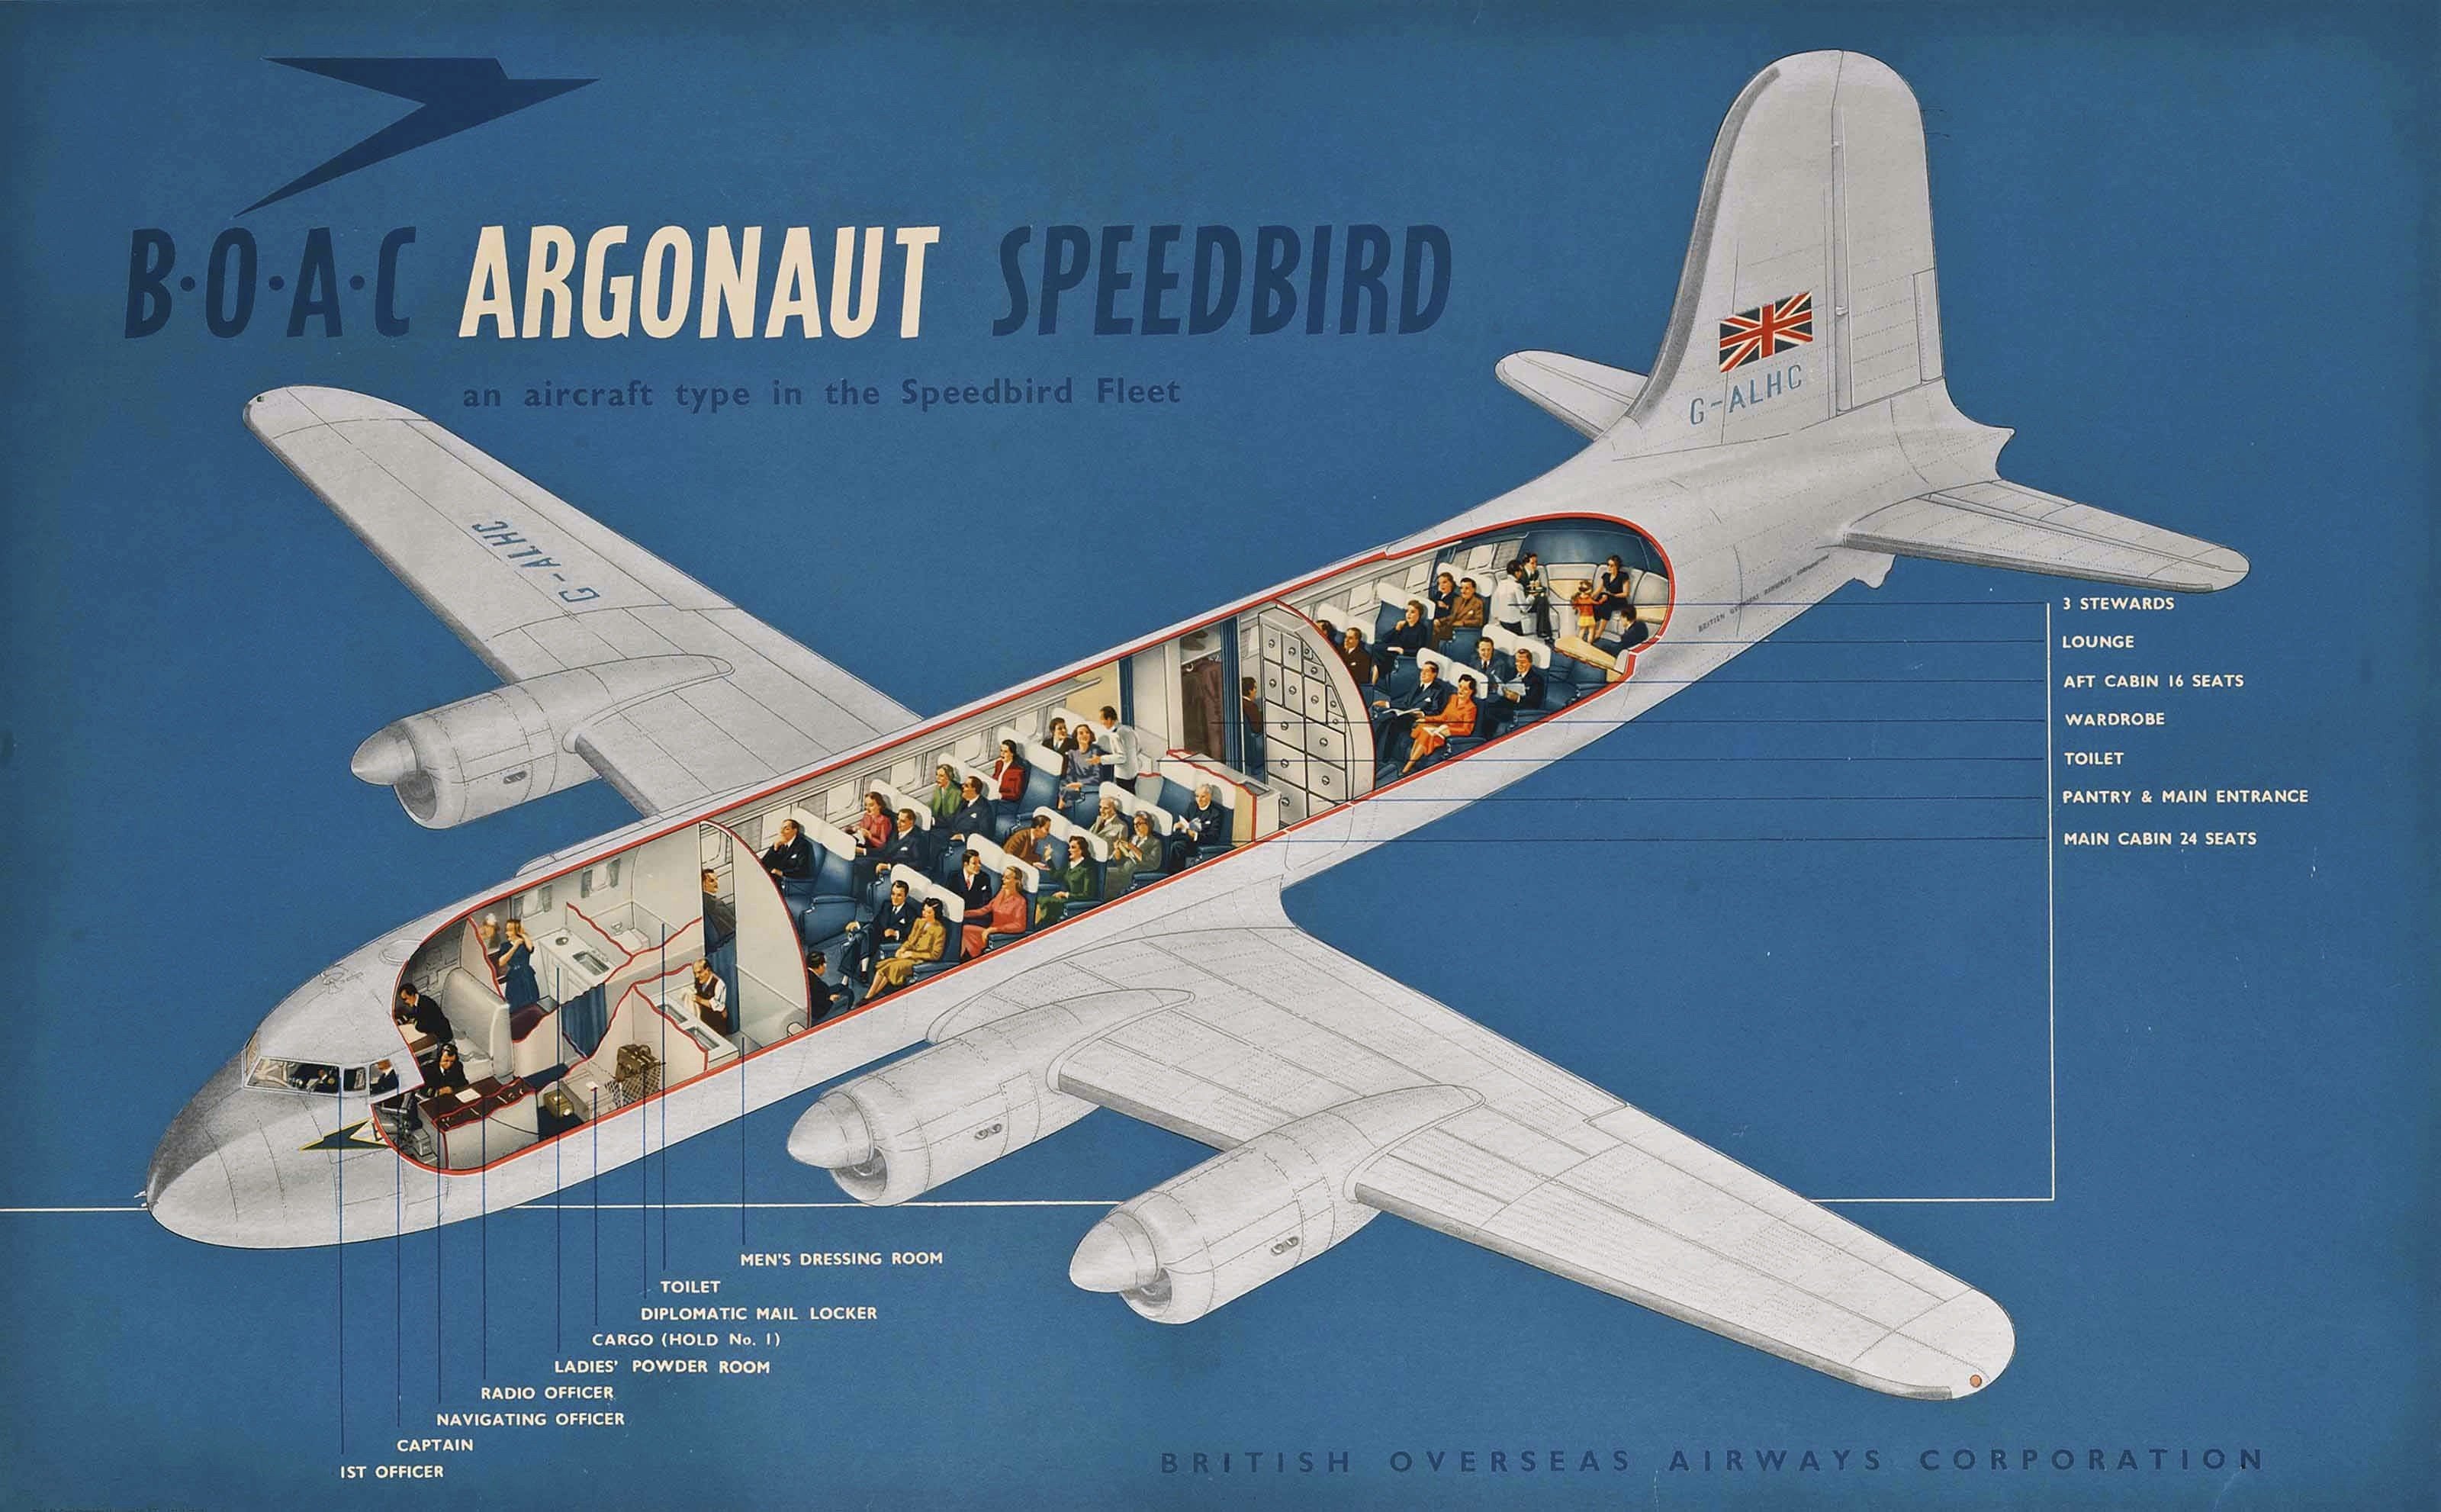 A BOAC Argonaut Speedbird poster from 1952.